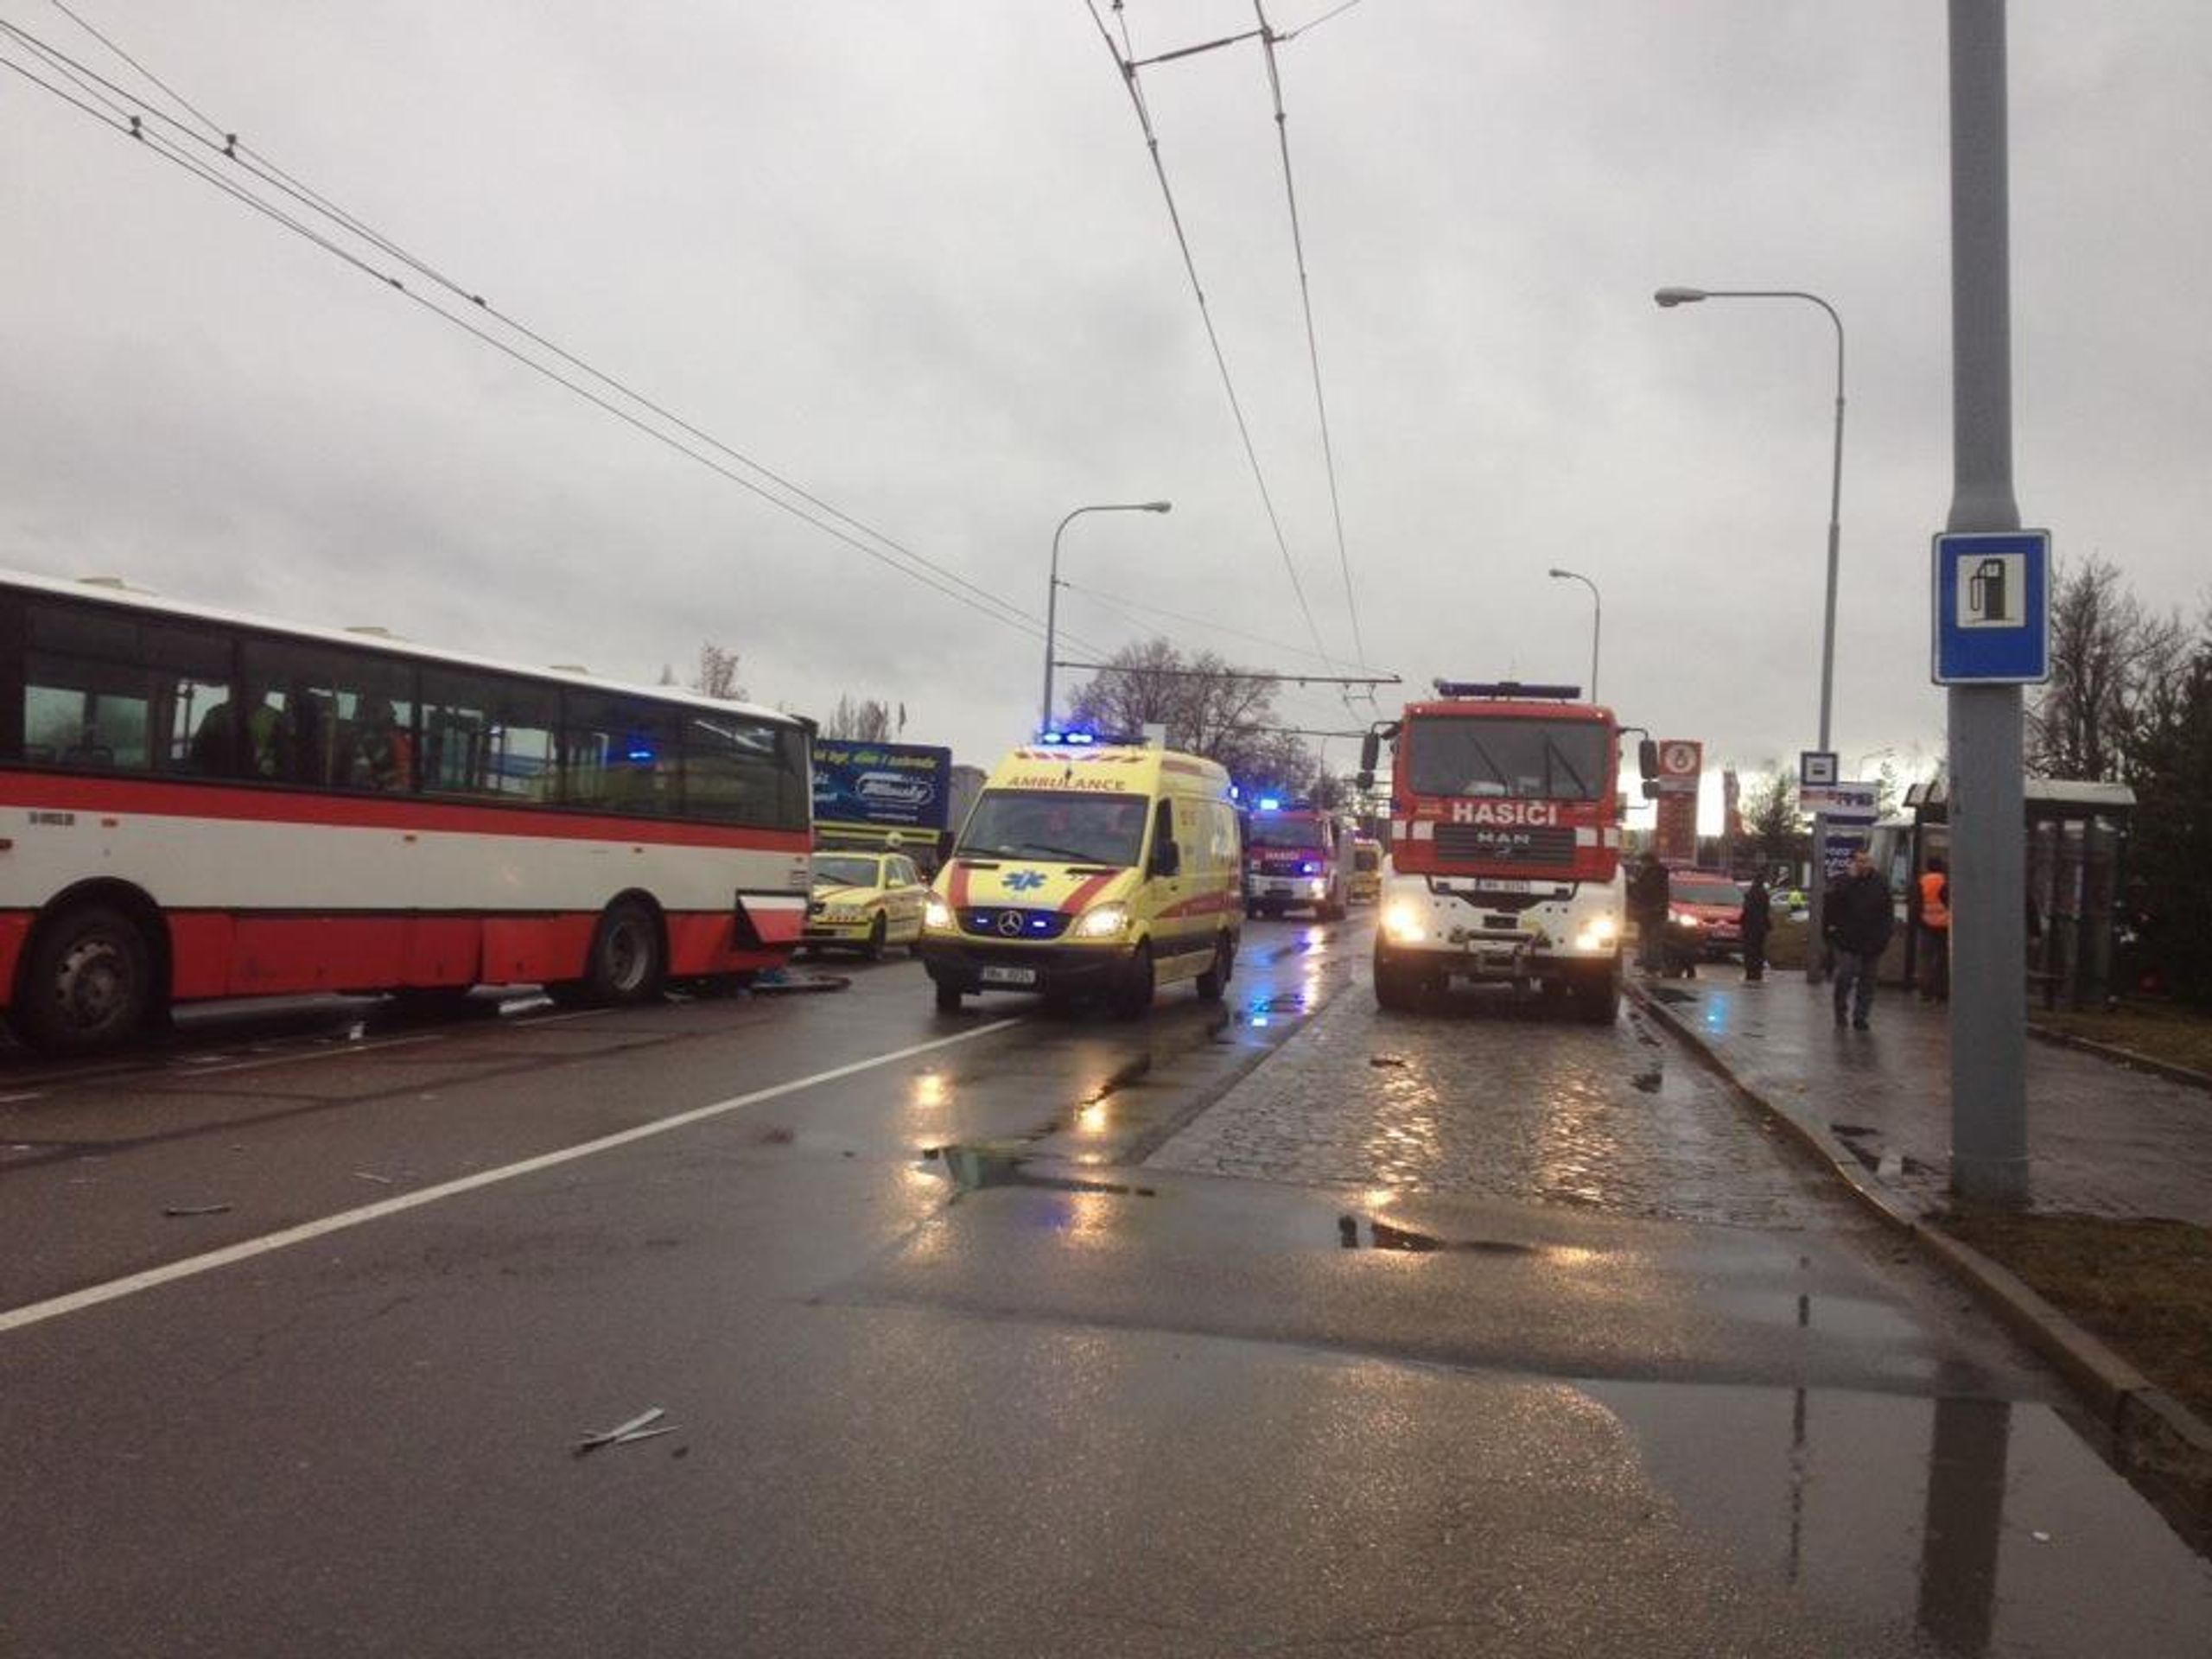 Nehoda autobusů v Brně - 1 - Nehoda autobusů v Brně (6/6)